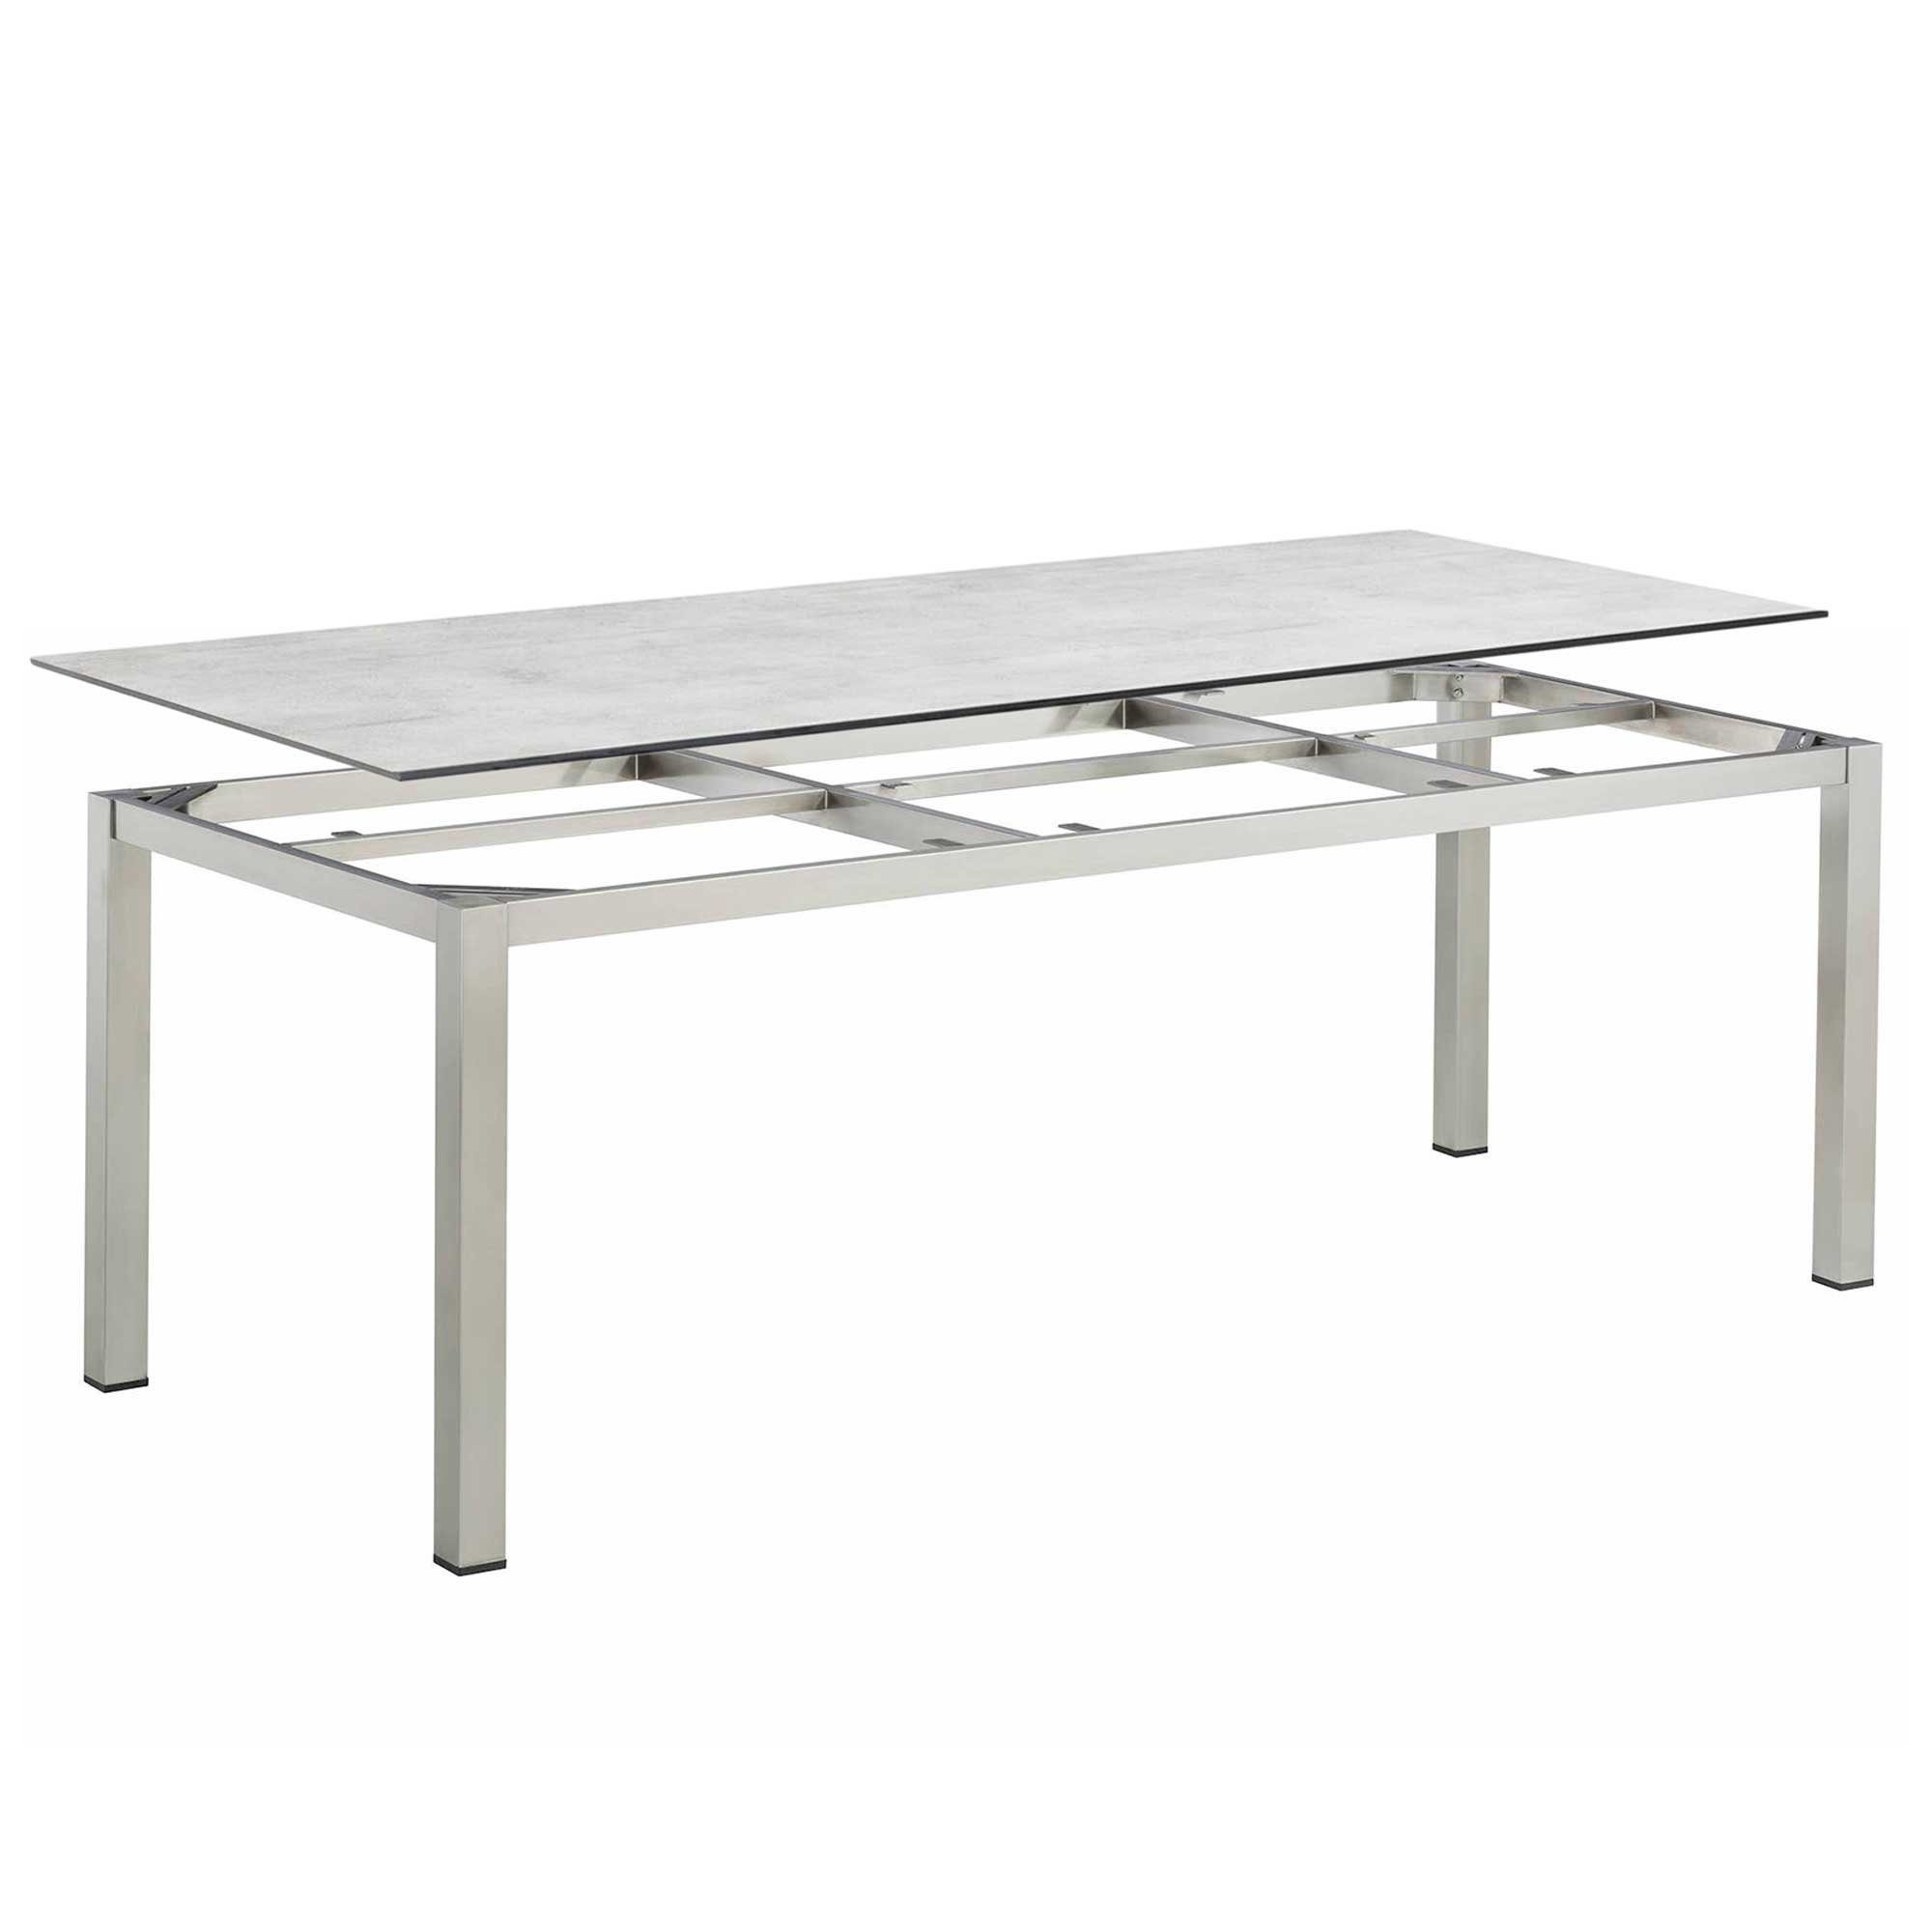 KETTLER Gartentisch Kettler Cubic Tischplatte grau 220x95cm mit Gartentisch HPL Edelstahl